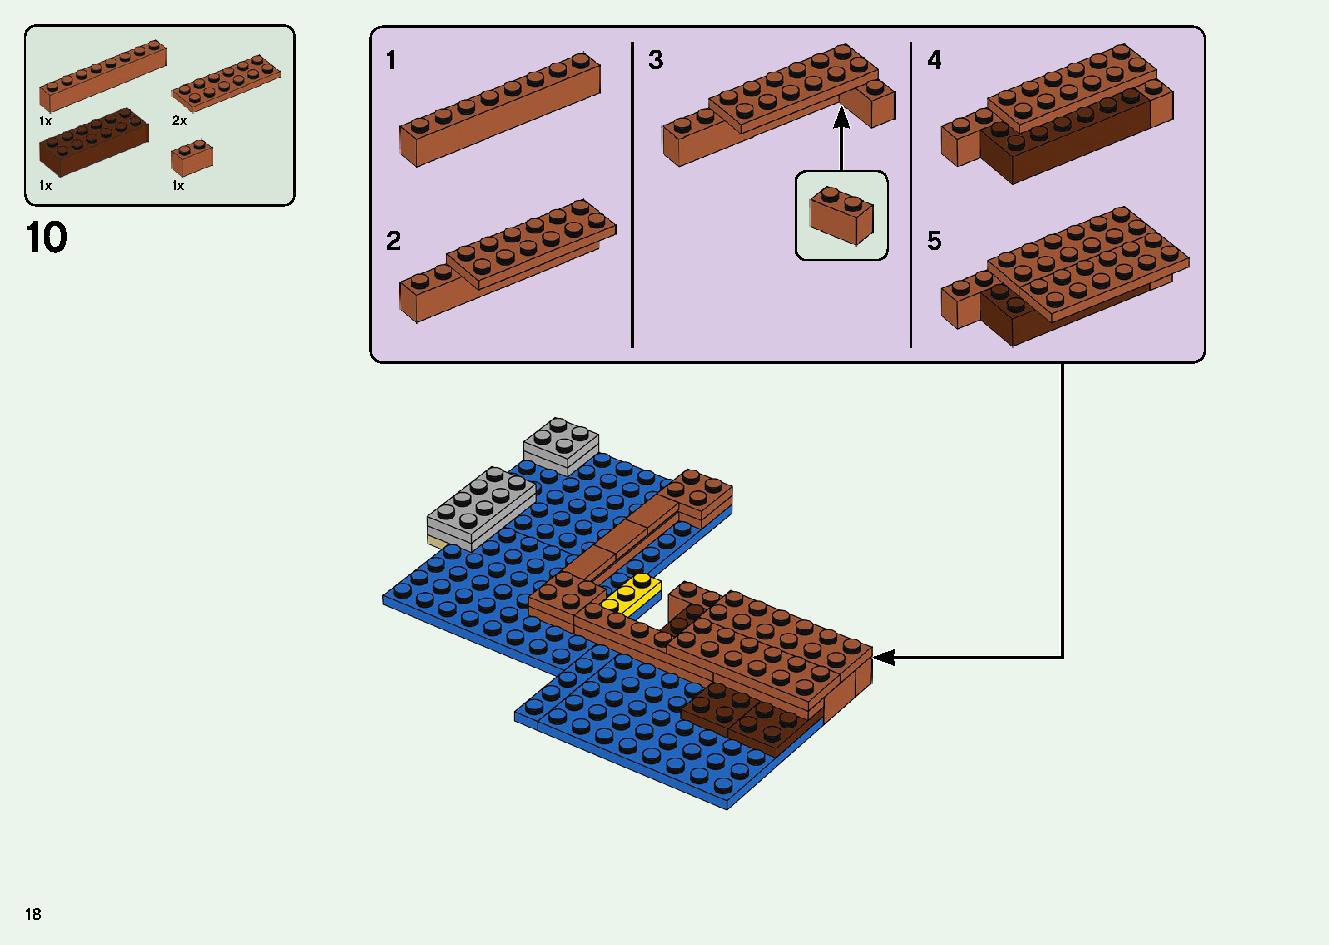 巨大クリーパー像の鉱山 21155 レゴの商品情報 レゴの説明書・組立方法 18 page